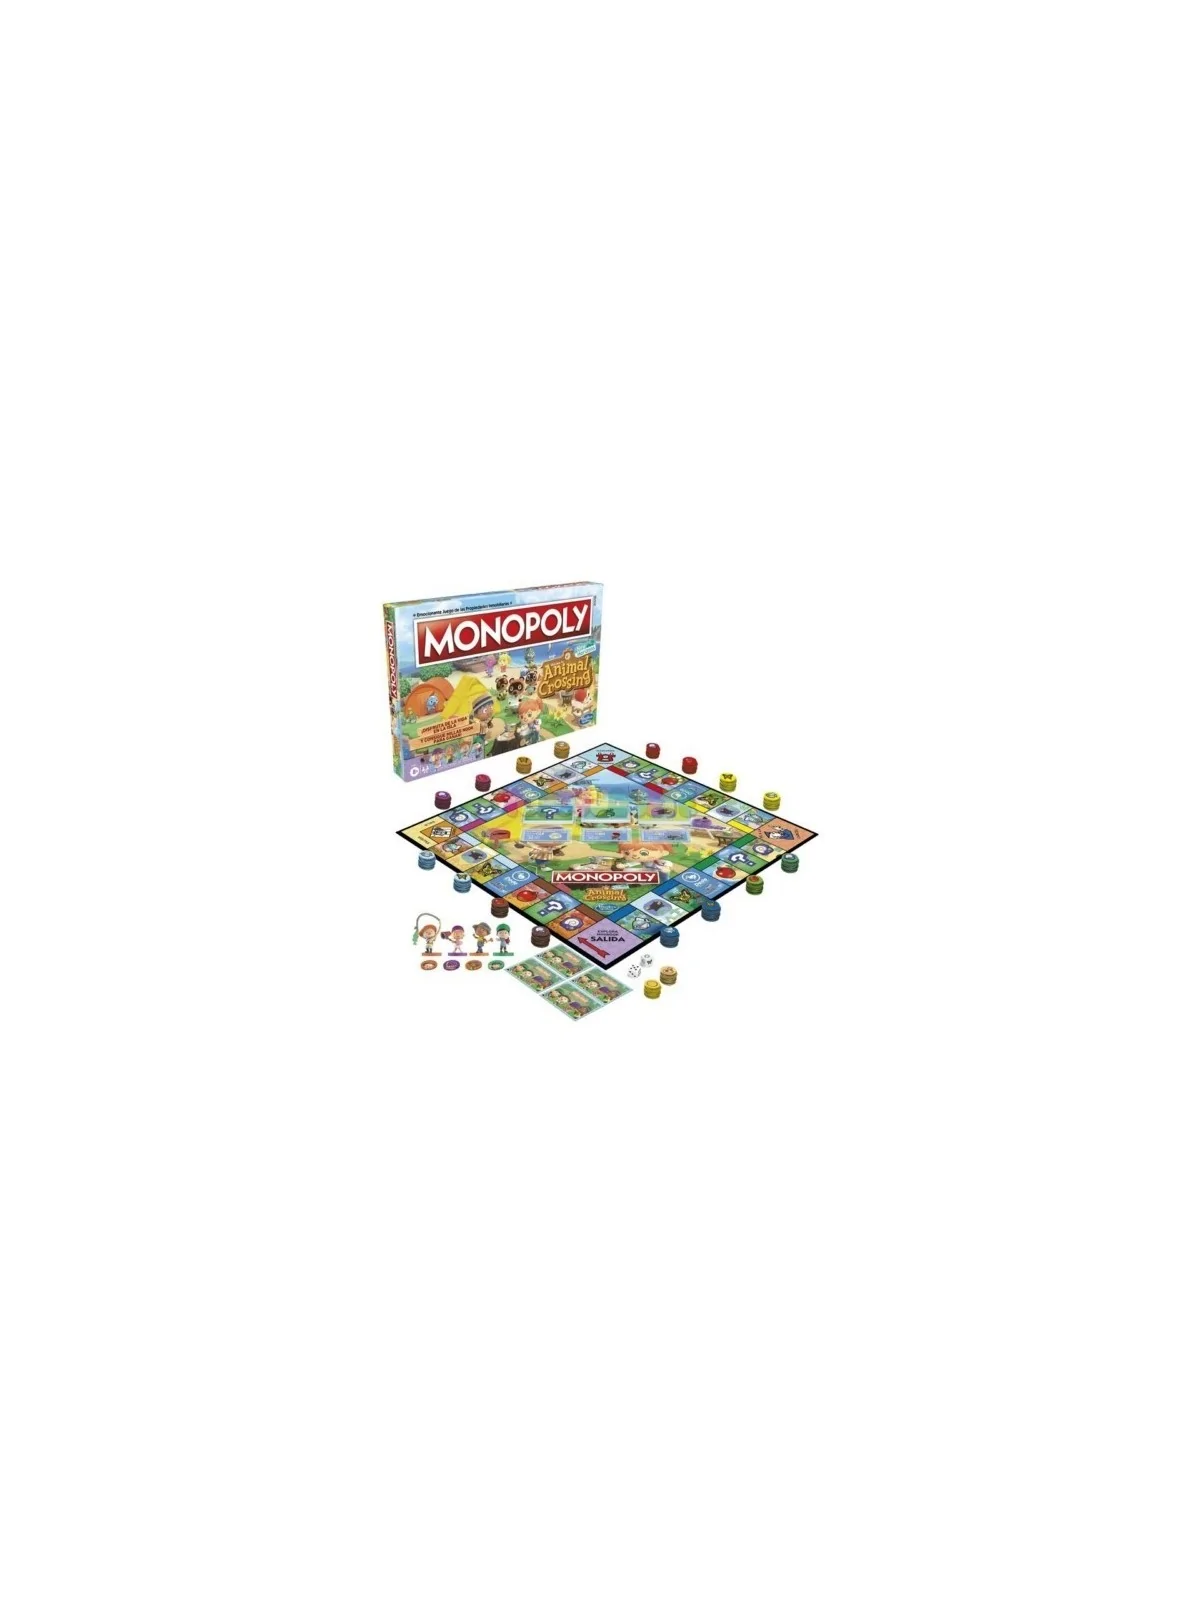 Comprar Monopoly Animal Crossing barato al mejor precio 26,99 € de Has